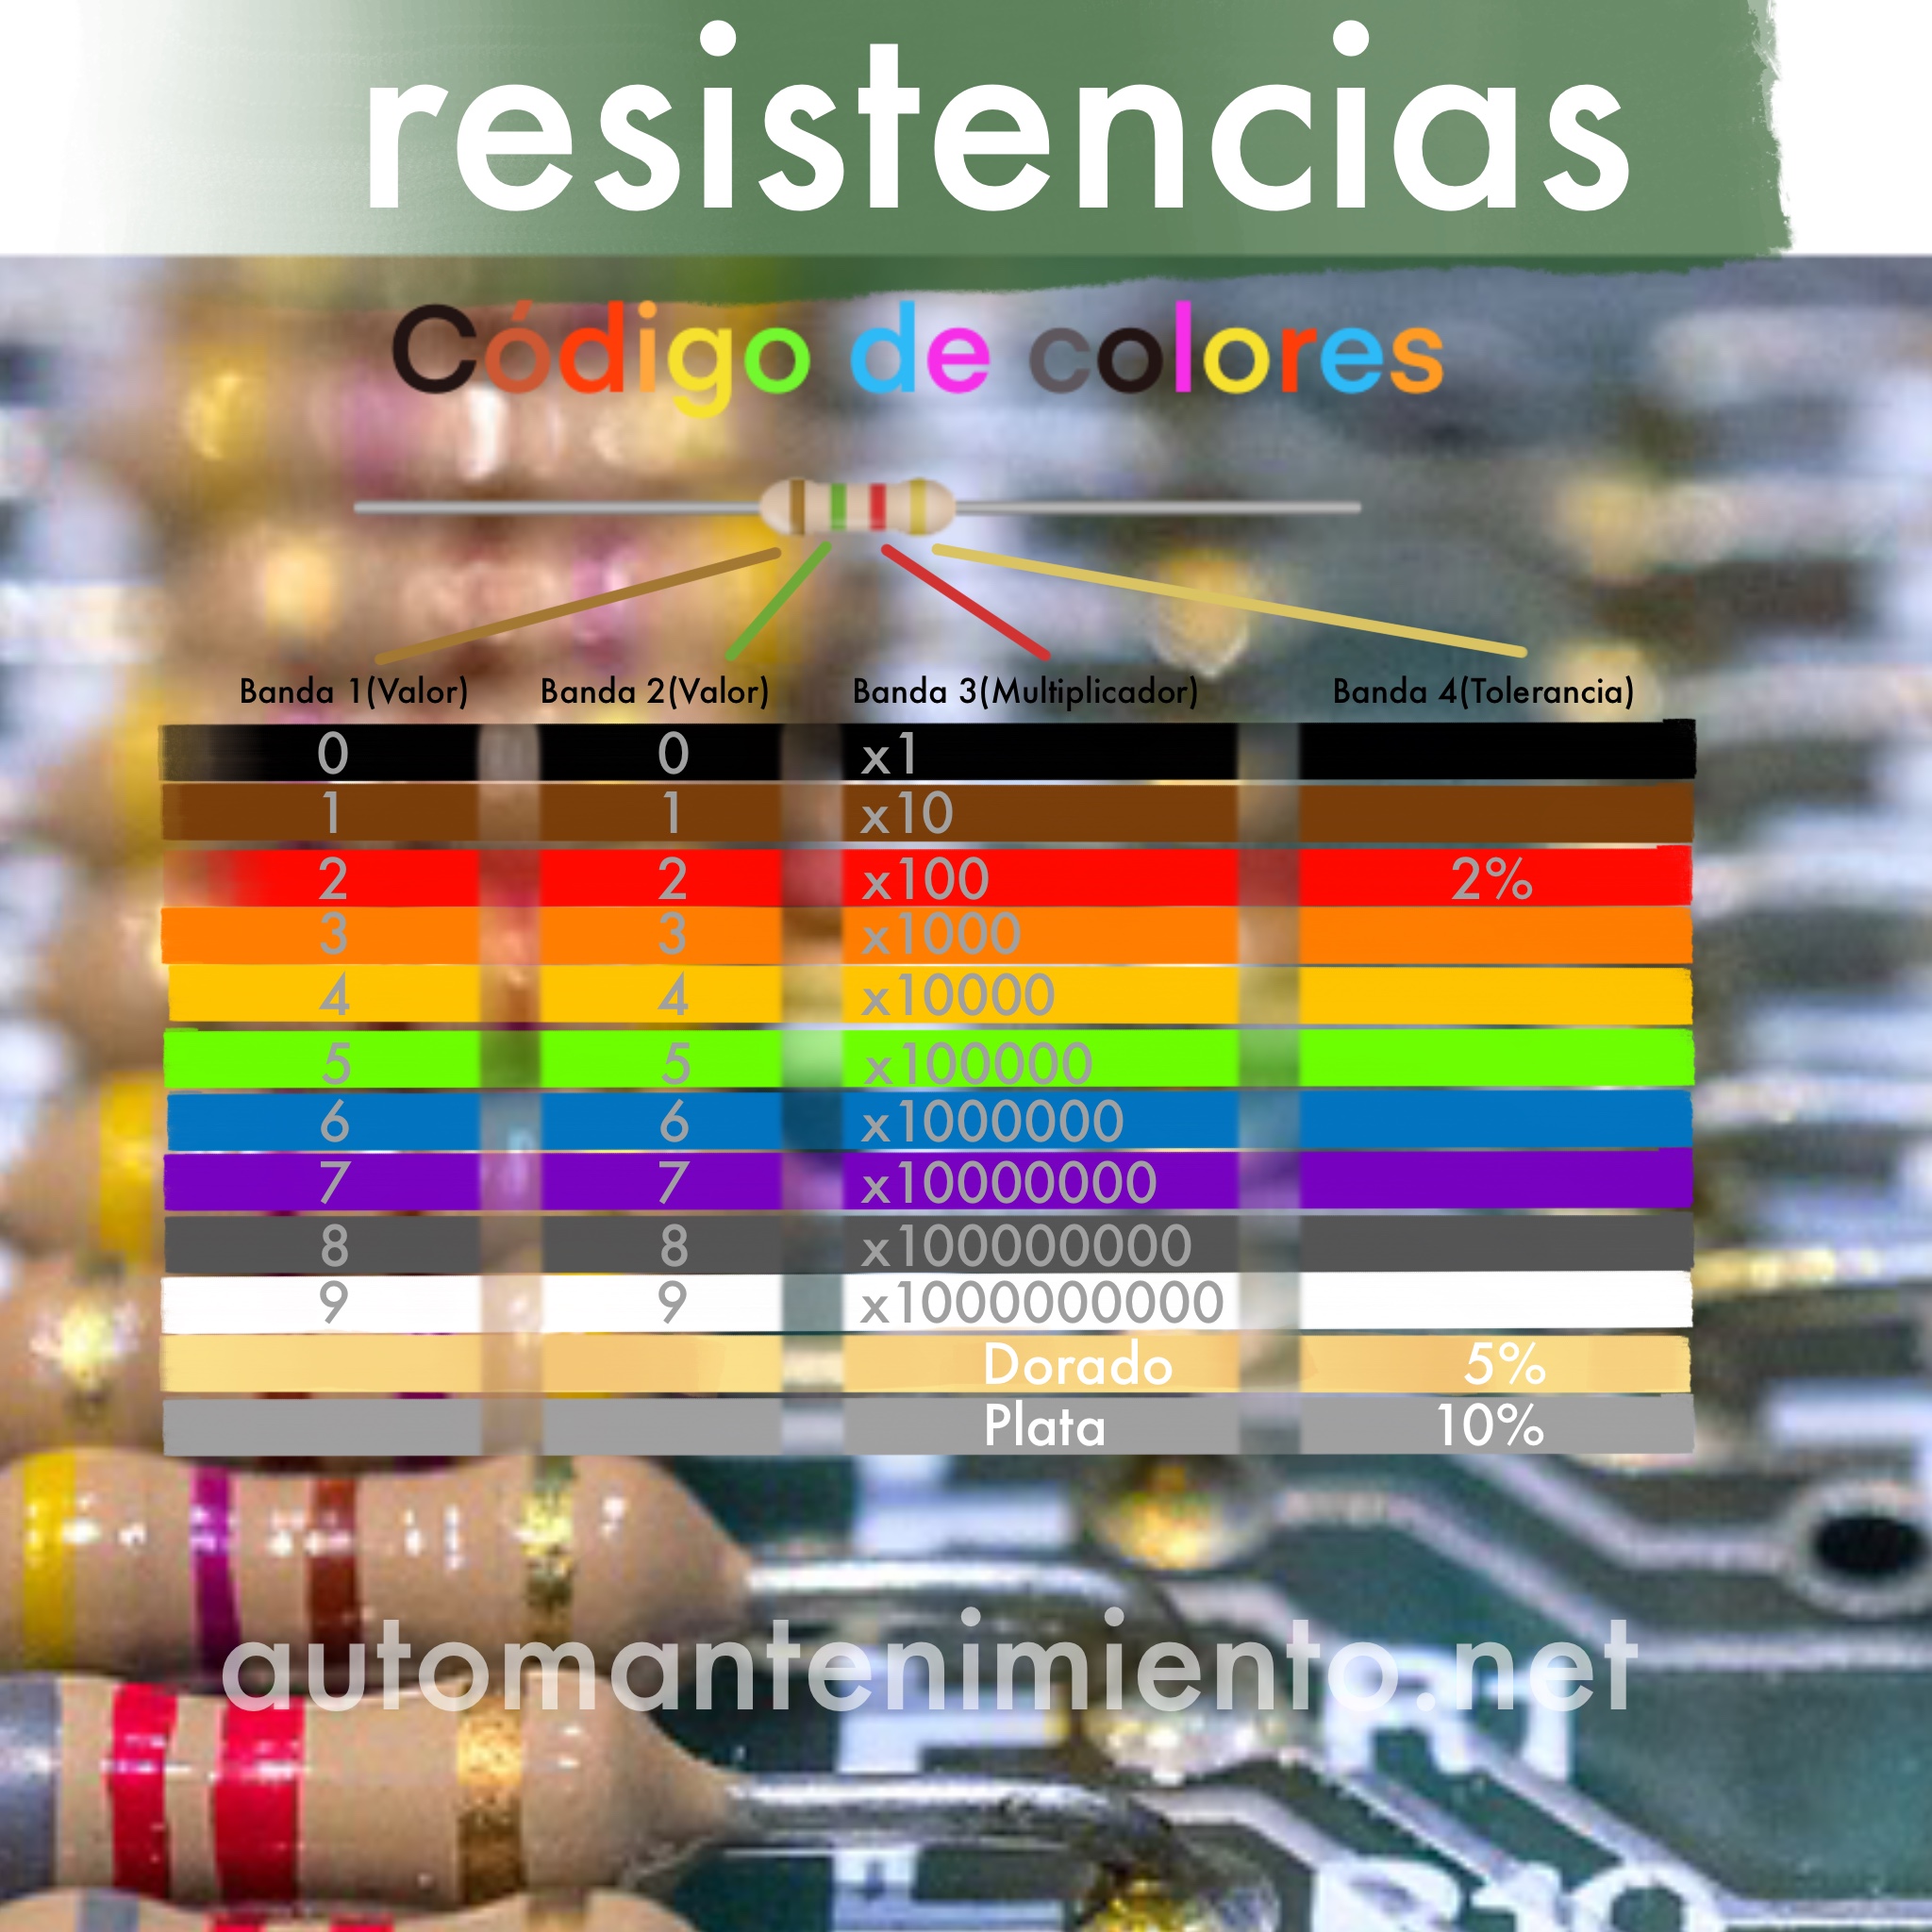 Codigo de Colores de Resistencias Electricas